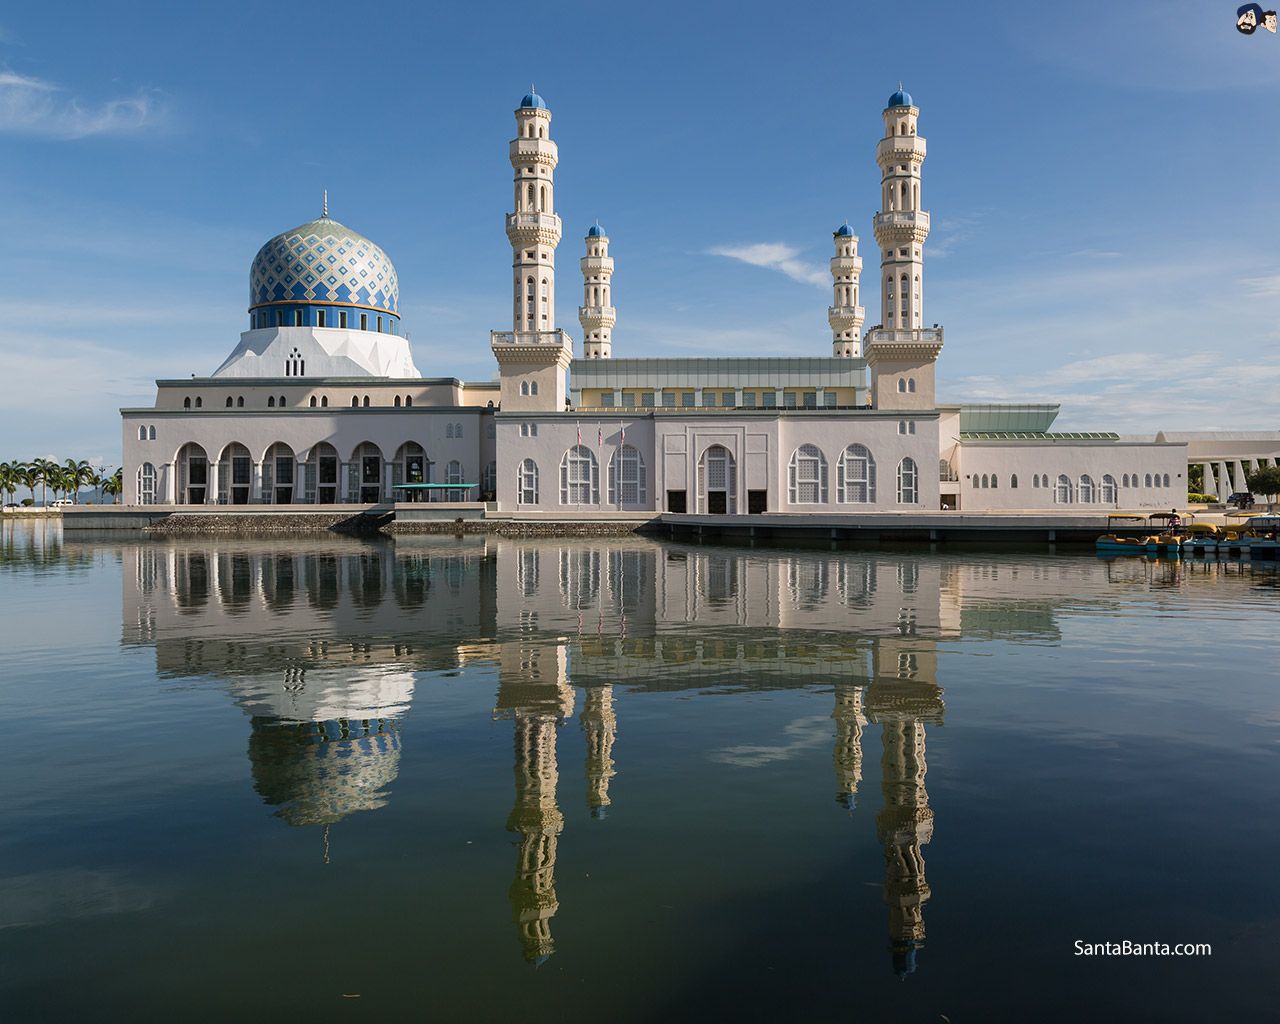 Kota Kinabalu City Mosque in Malaysia